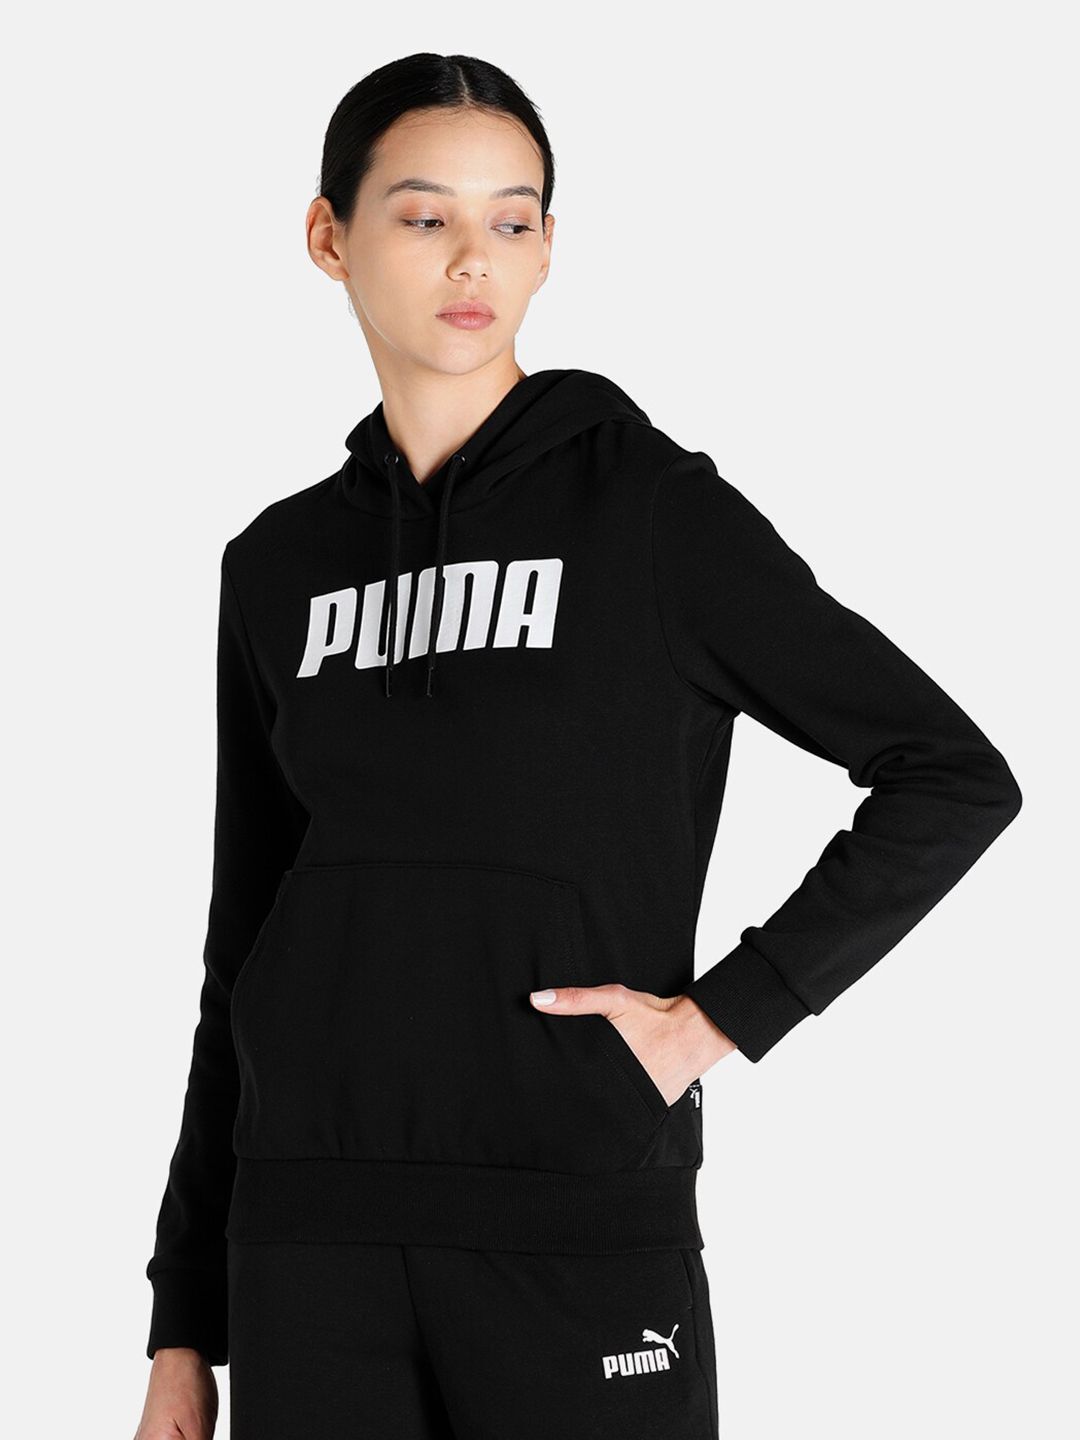 Puma Women Black Printed Hooded Sweatshirt Price in India